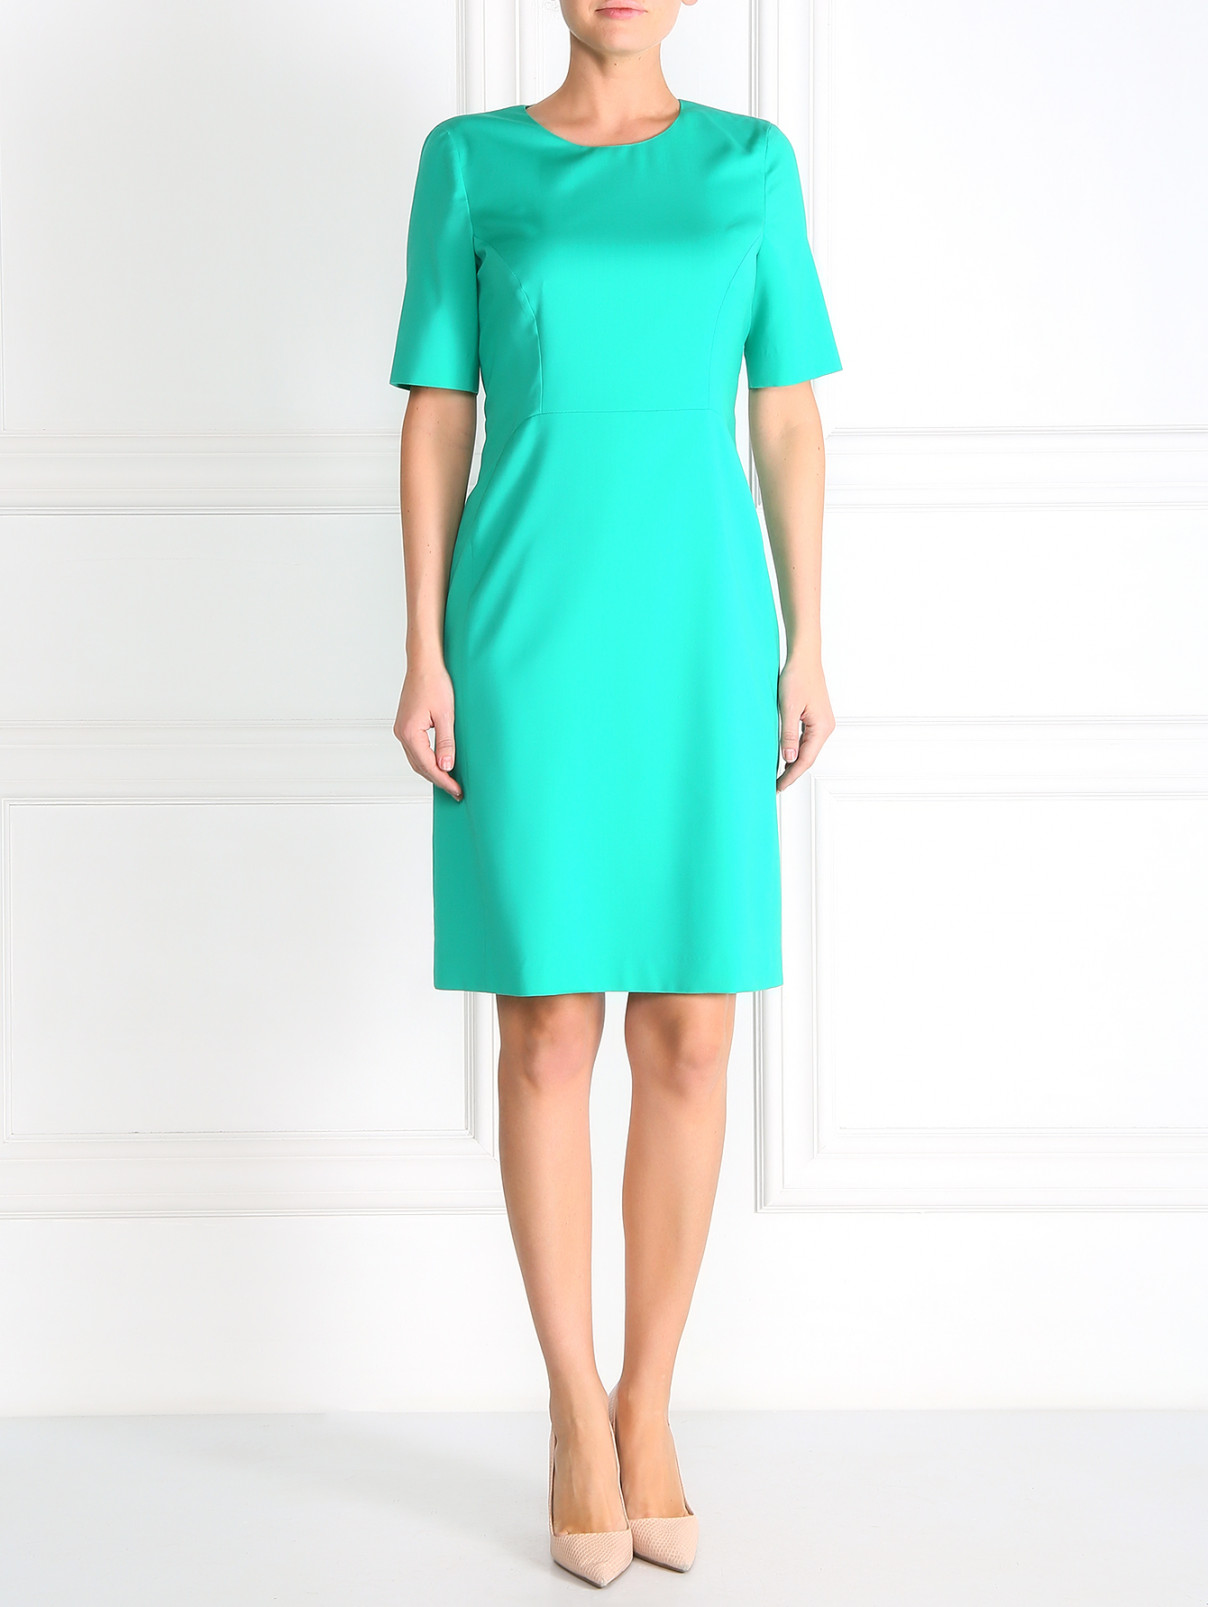 Платье из шерсти Paul Smith  –  Модель Общий вид  – Цвет:  Зеленый